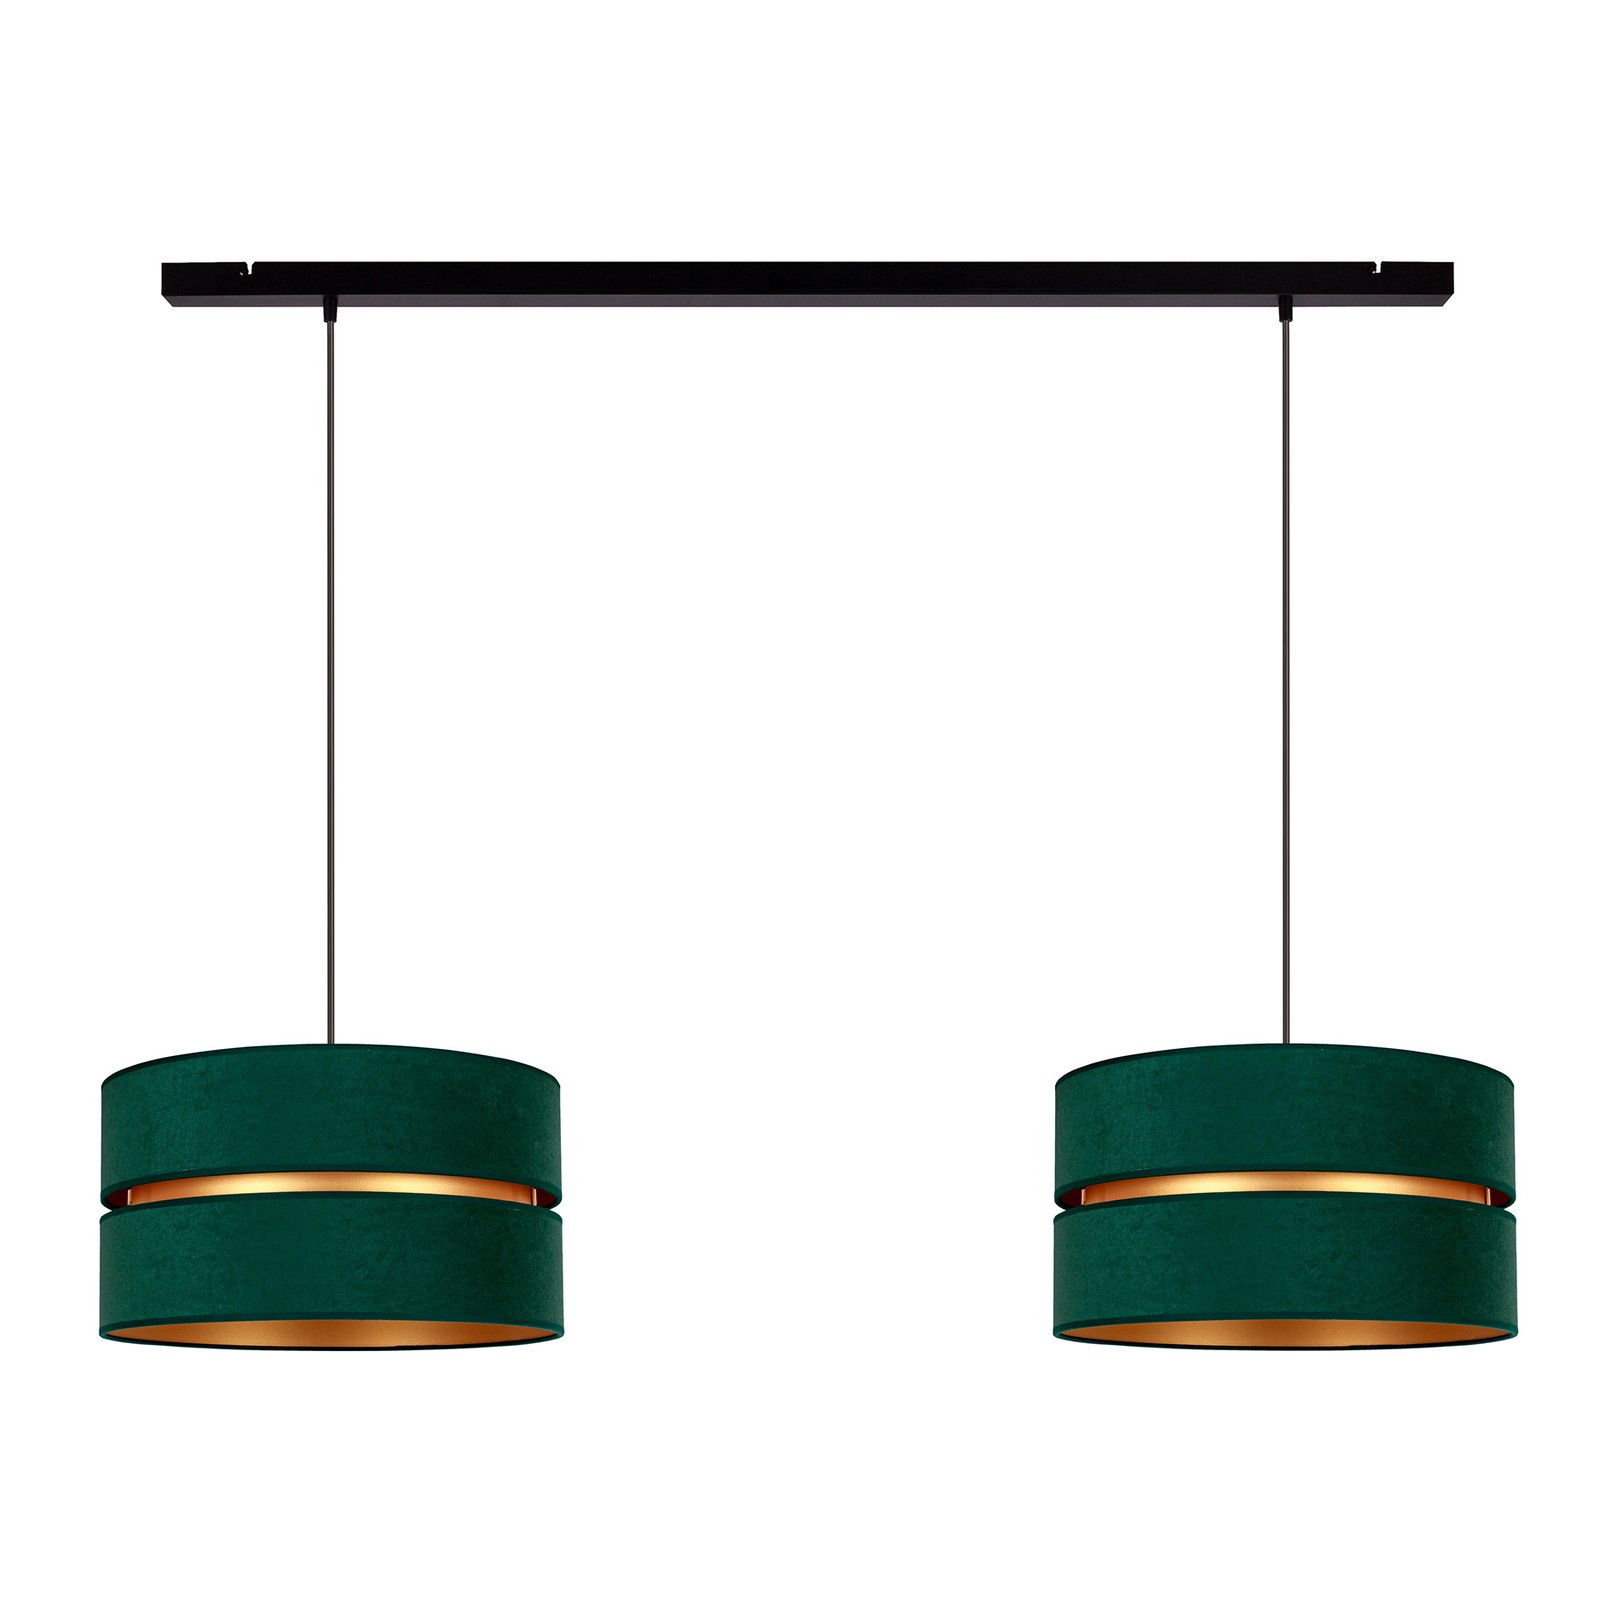 Hanglamp Duo, groen/goud, 2-lamps